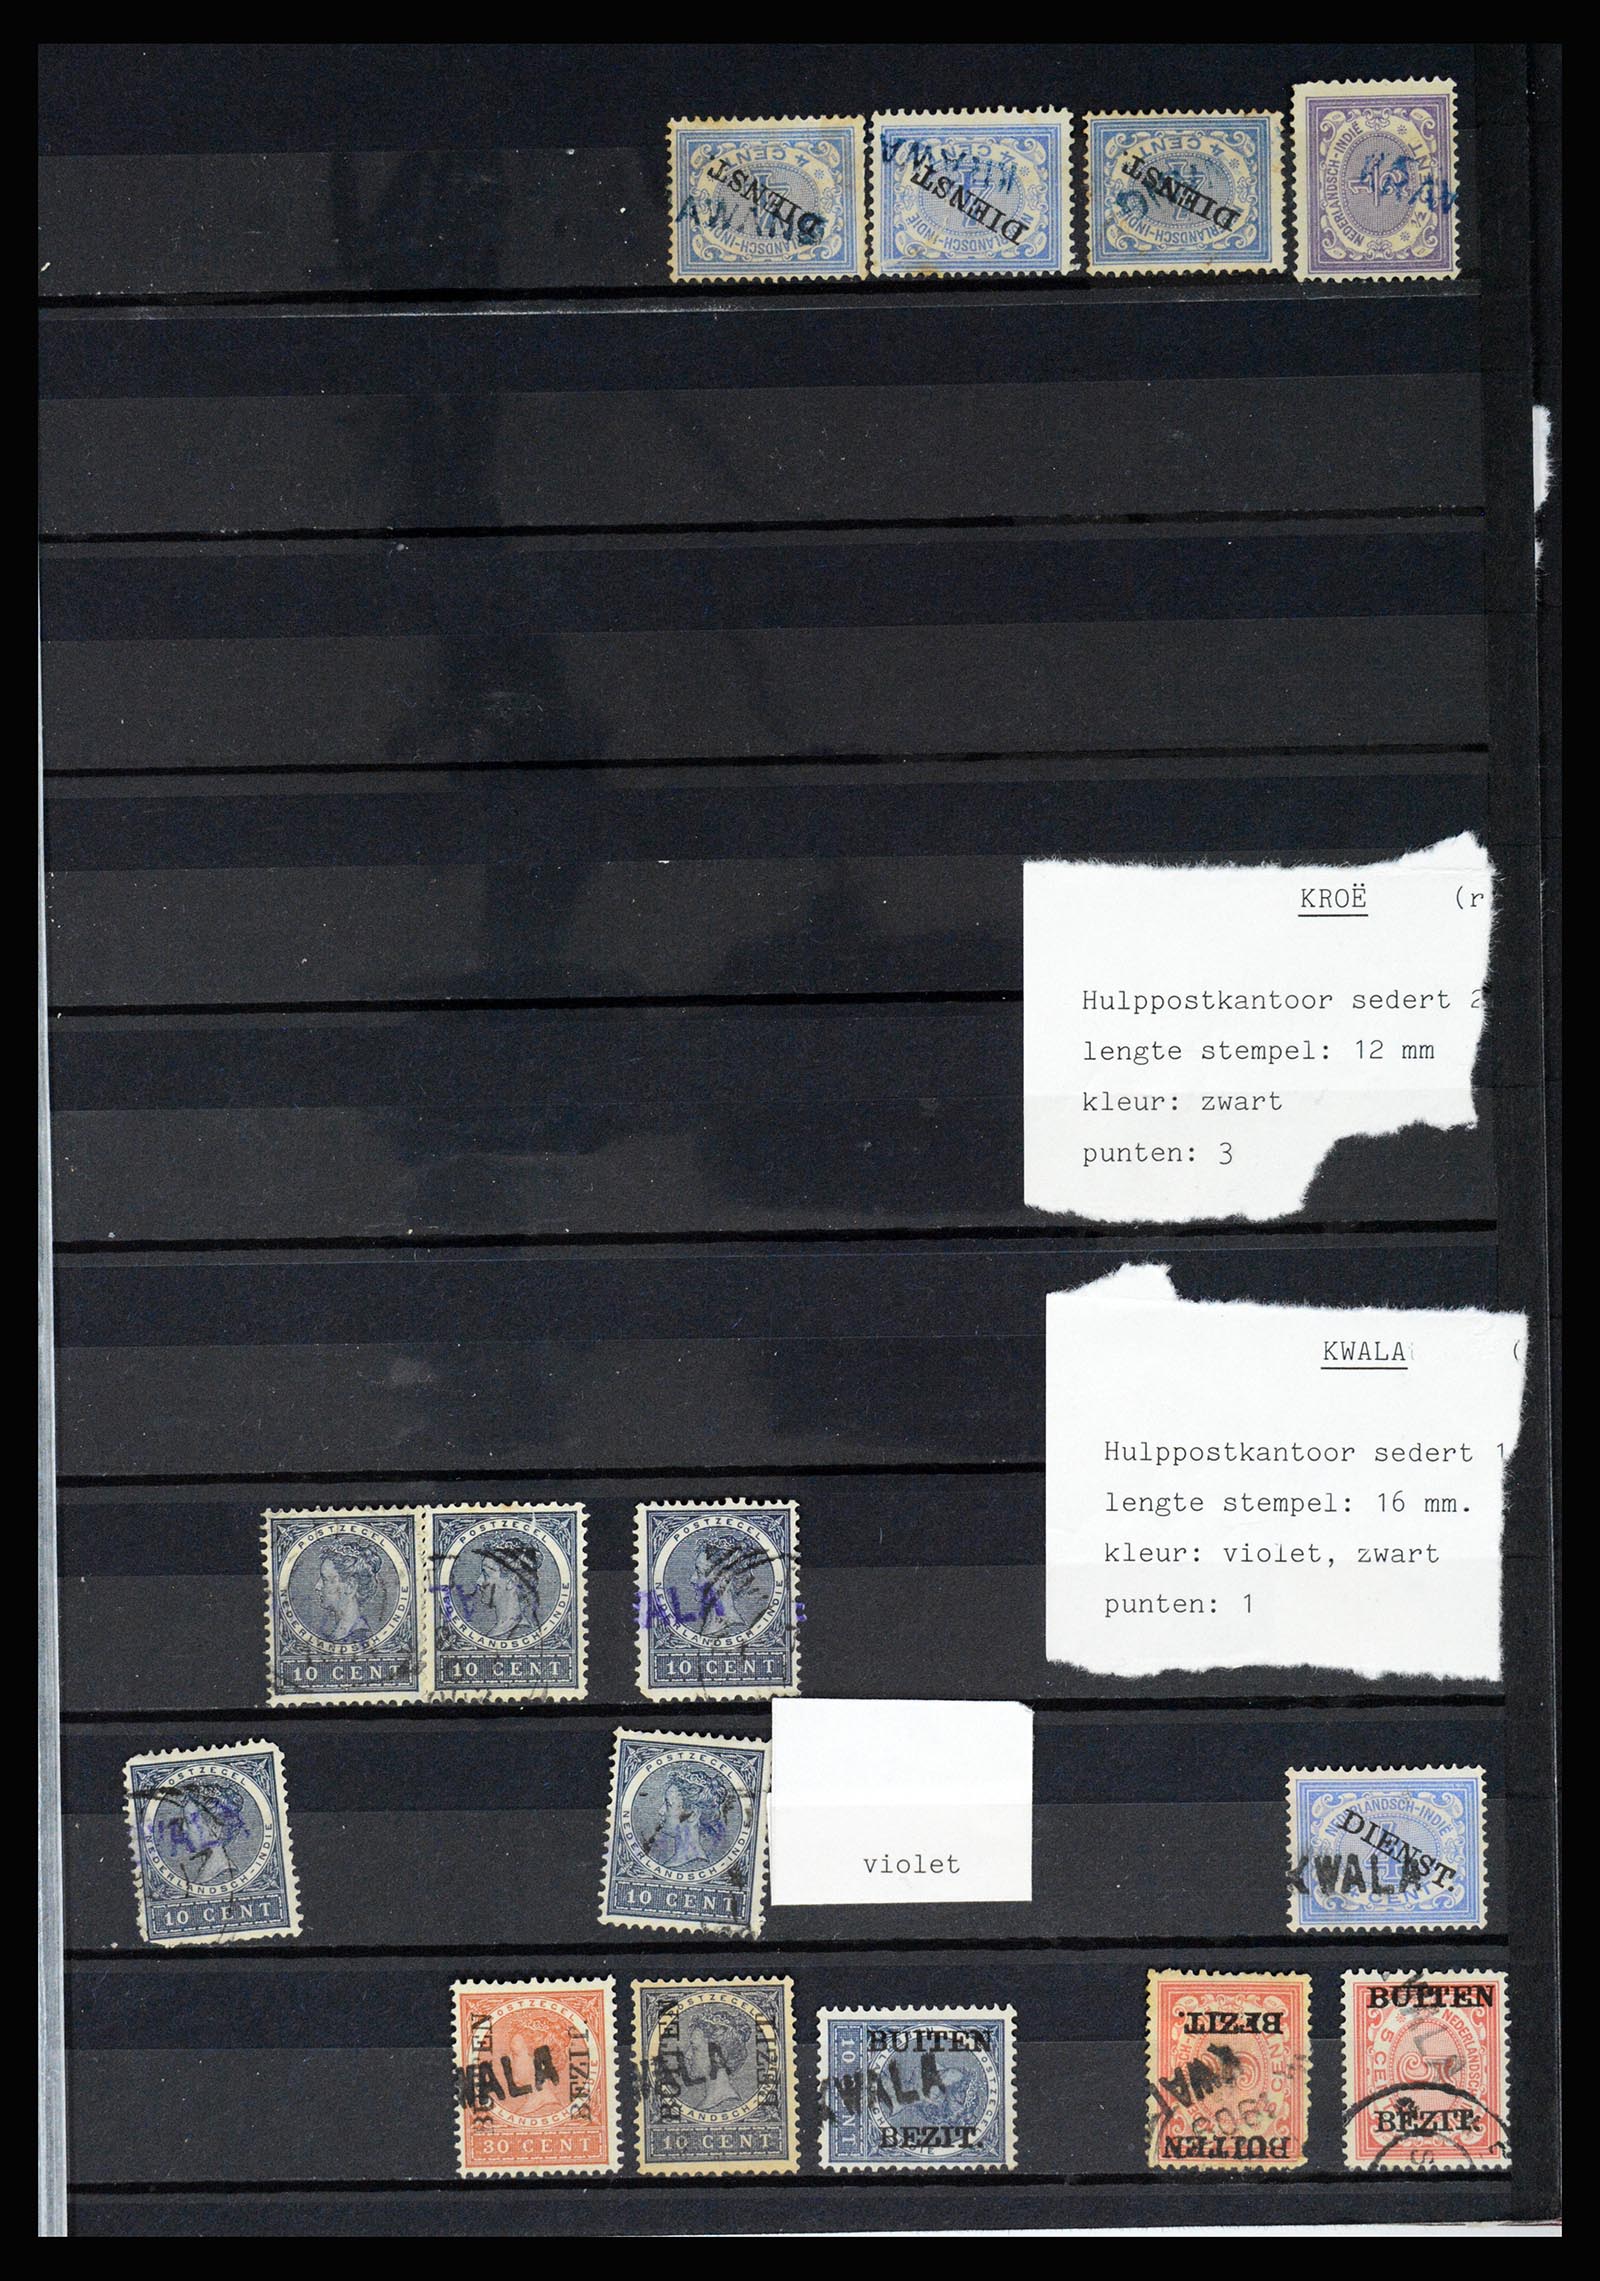 36512 037 - Stamp collection 36512 Nederlands Indië stempels 1872-1930.